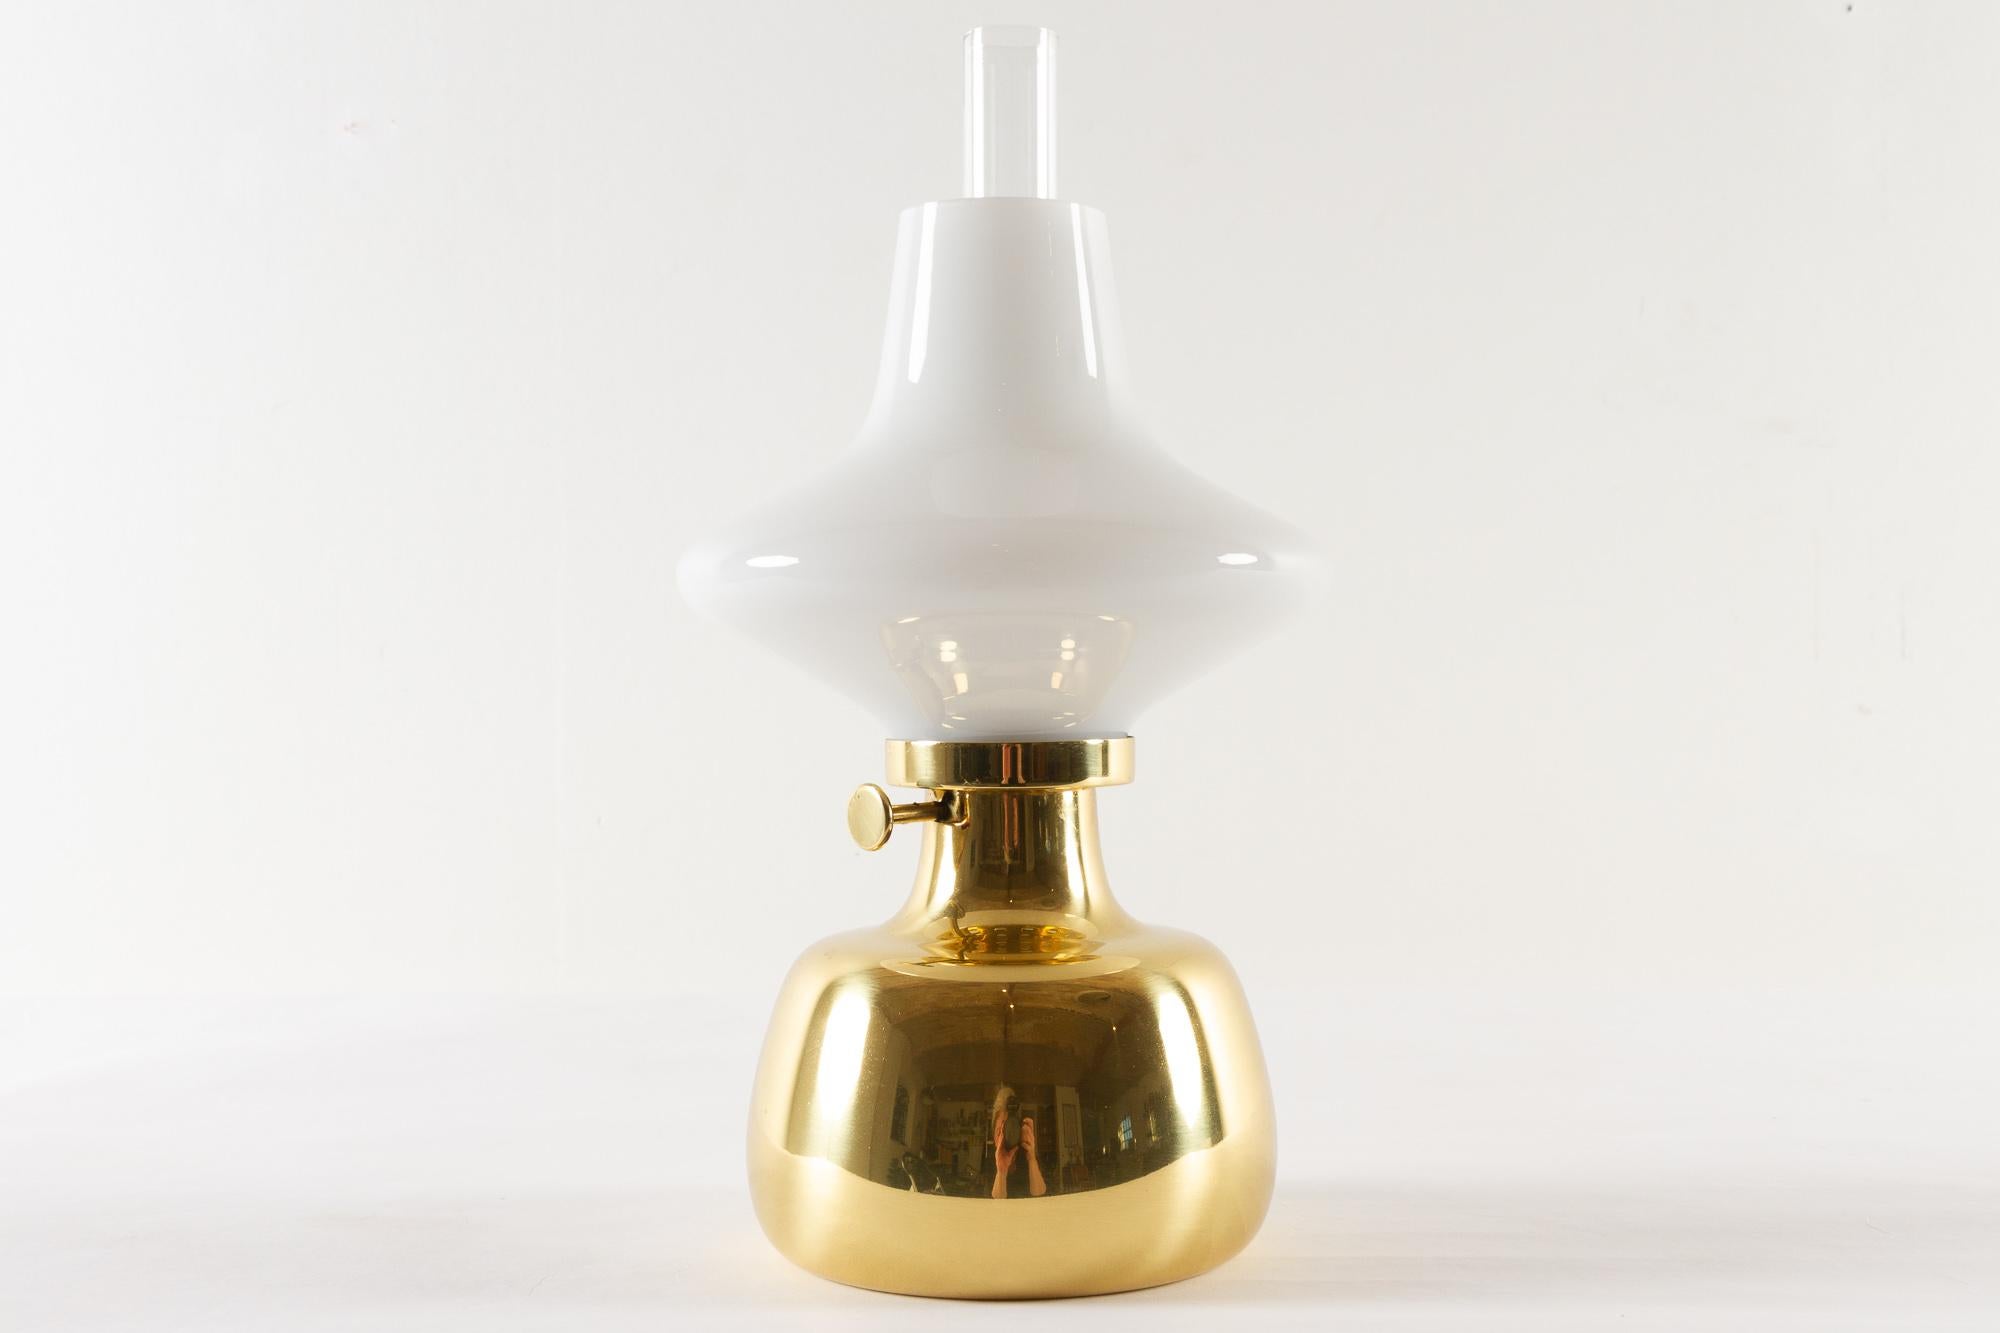 Petronella Lampe von Henning Koppel für Louis Poulsen, 1960er Jahre.

Dänische Öllampe aus Messing und weißem Opalglas. Entworfen von dem dänischen Designer Henning Koppel im Jahr 1961. Der Leuchtenkörper wurde von Louis Poulsen in Dänemark